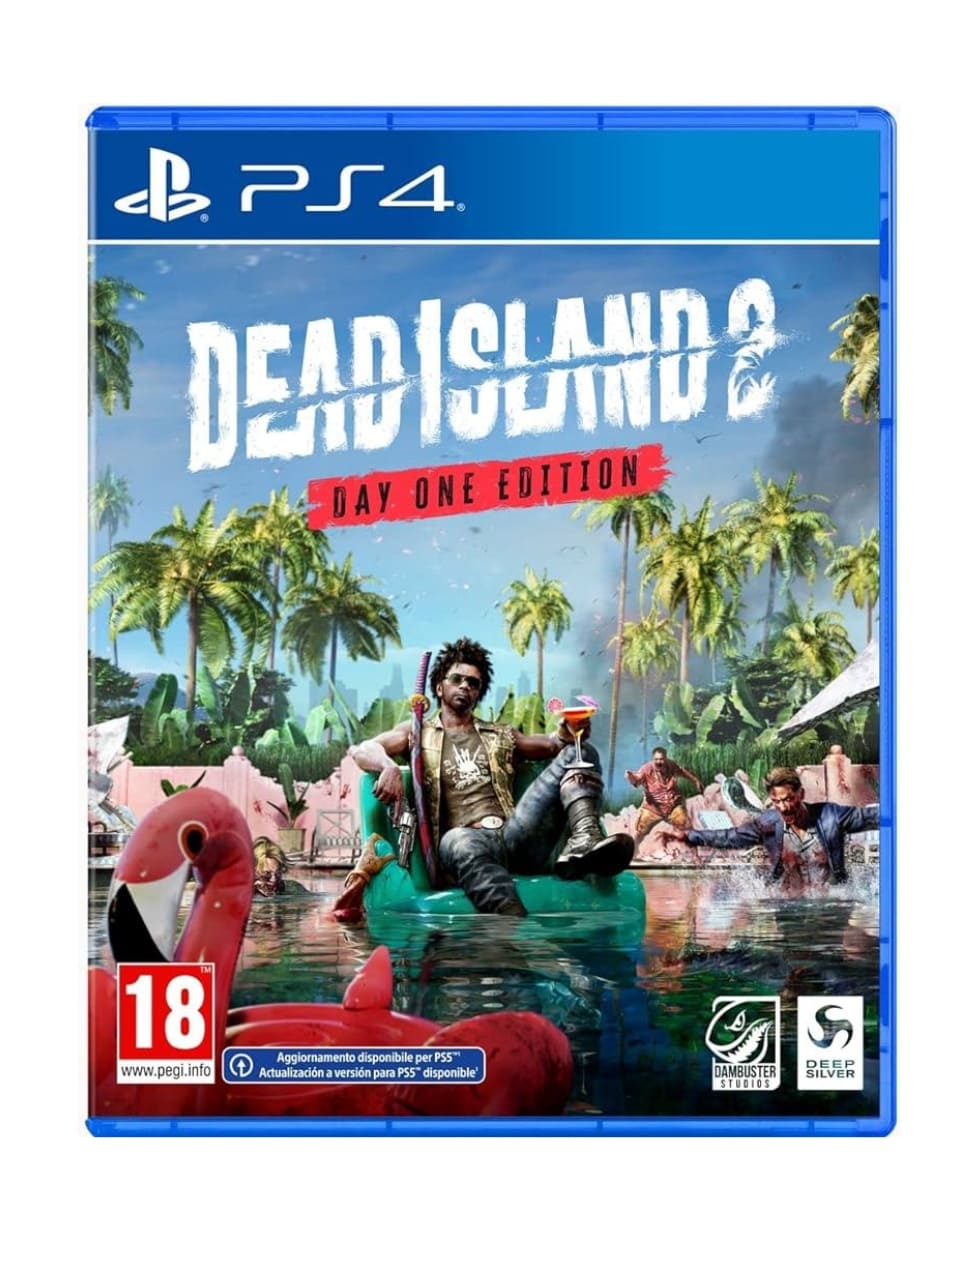 Dead Island 2 - Day One Edition (Italienische Verpackung - Deutsche Untertitel) - PlayStation 4/PS4